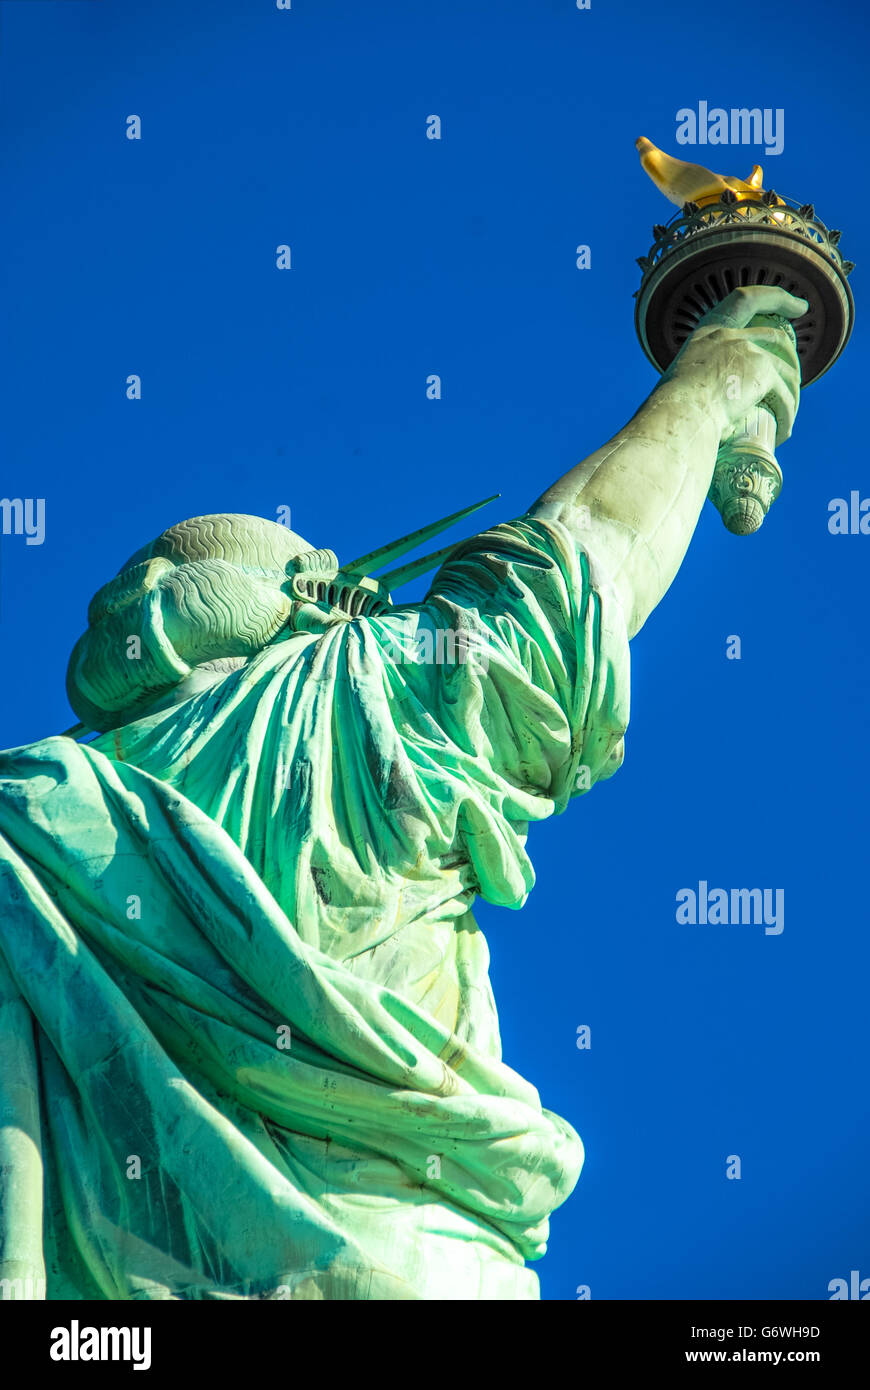 Dettaglio della statua della Libertà a New York Stati Uniti d'America Foto Stock